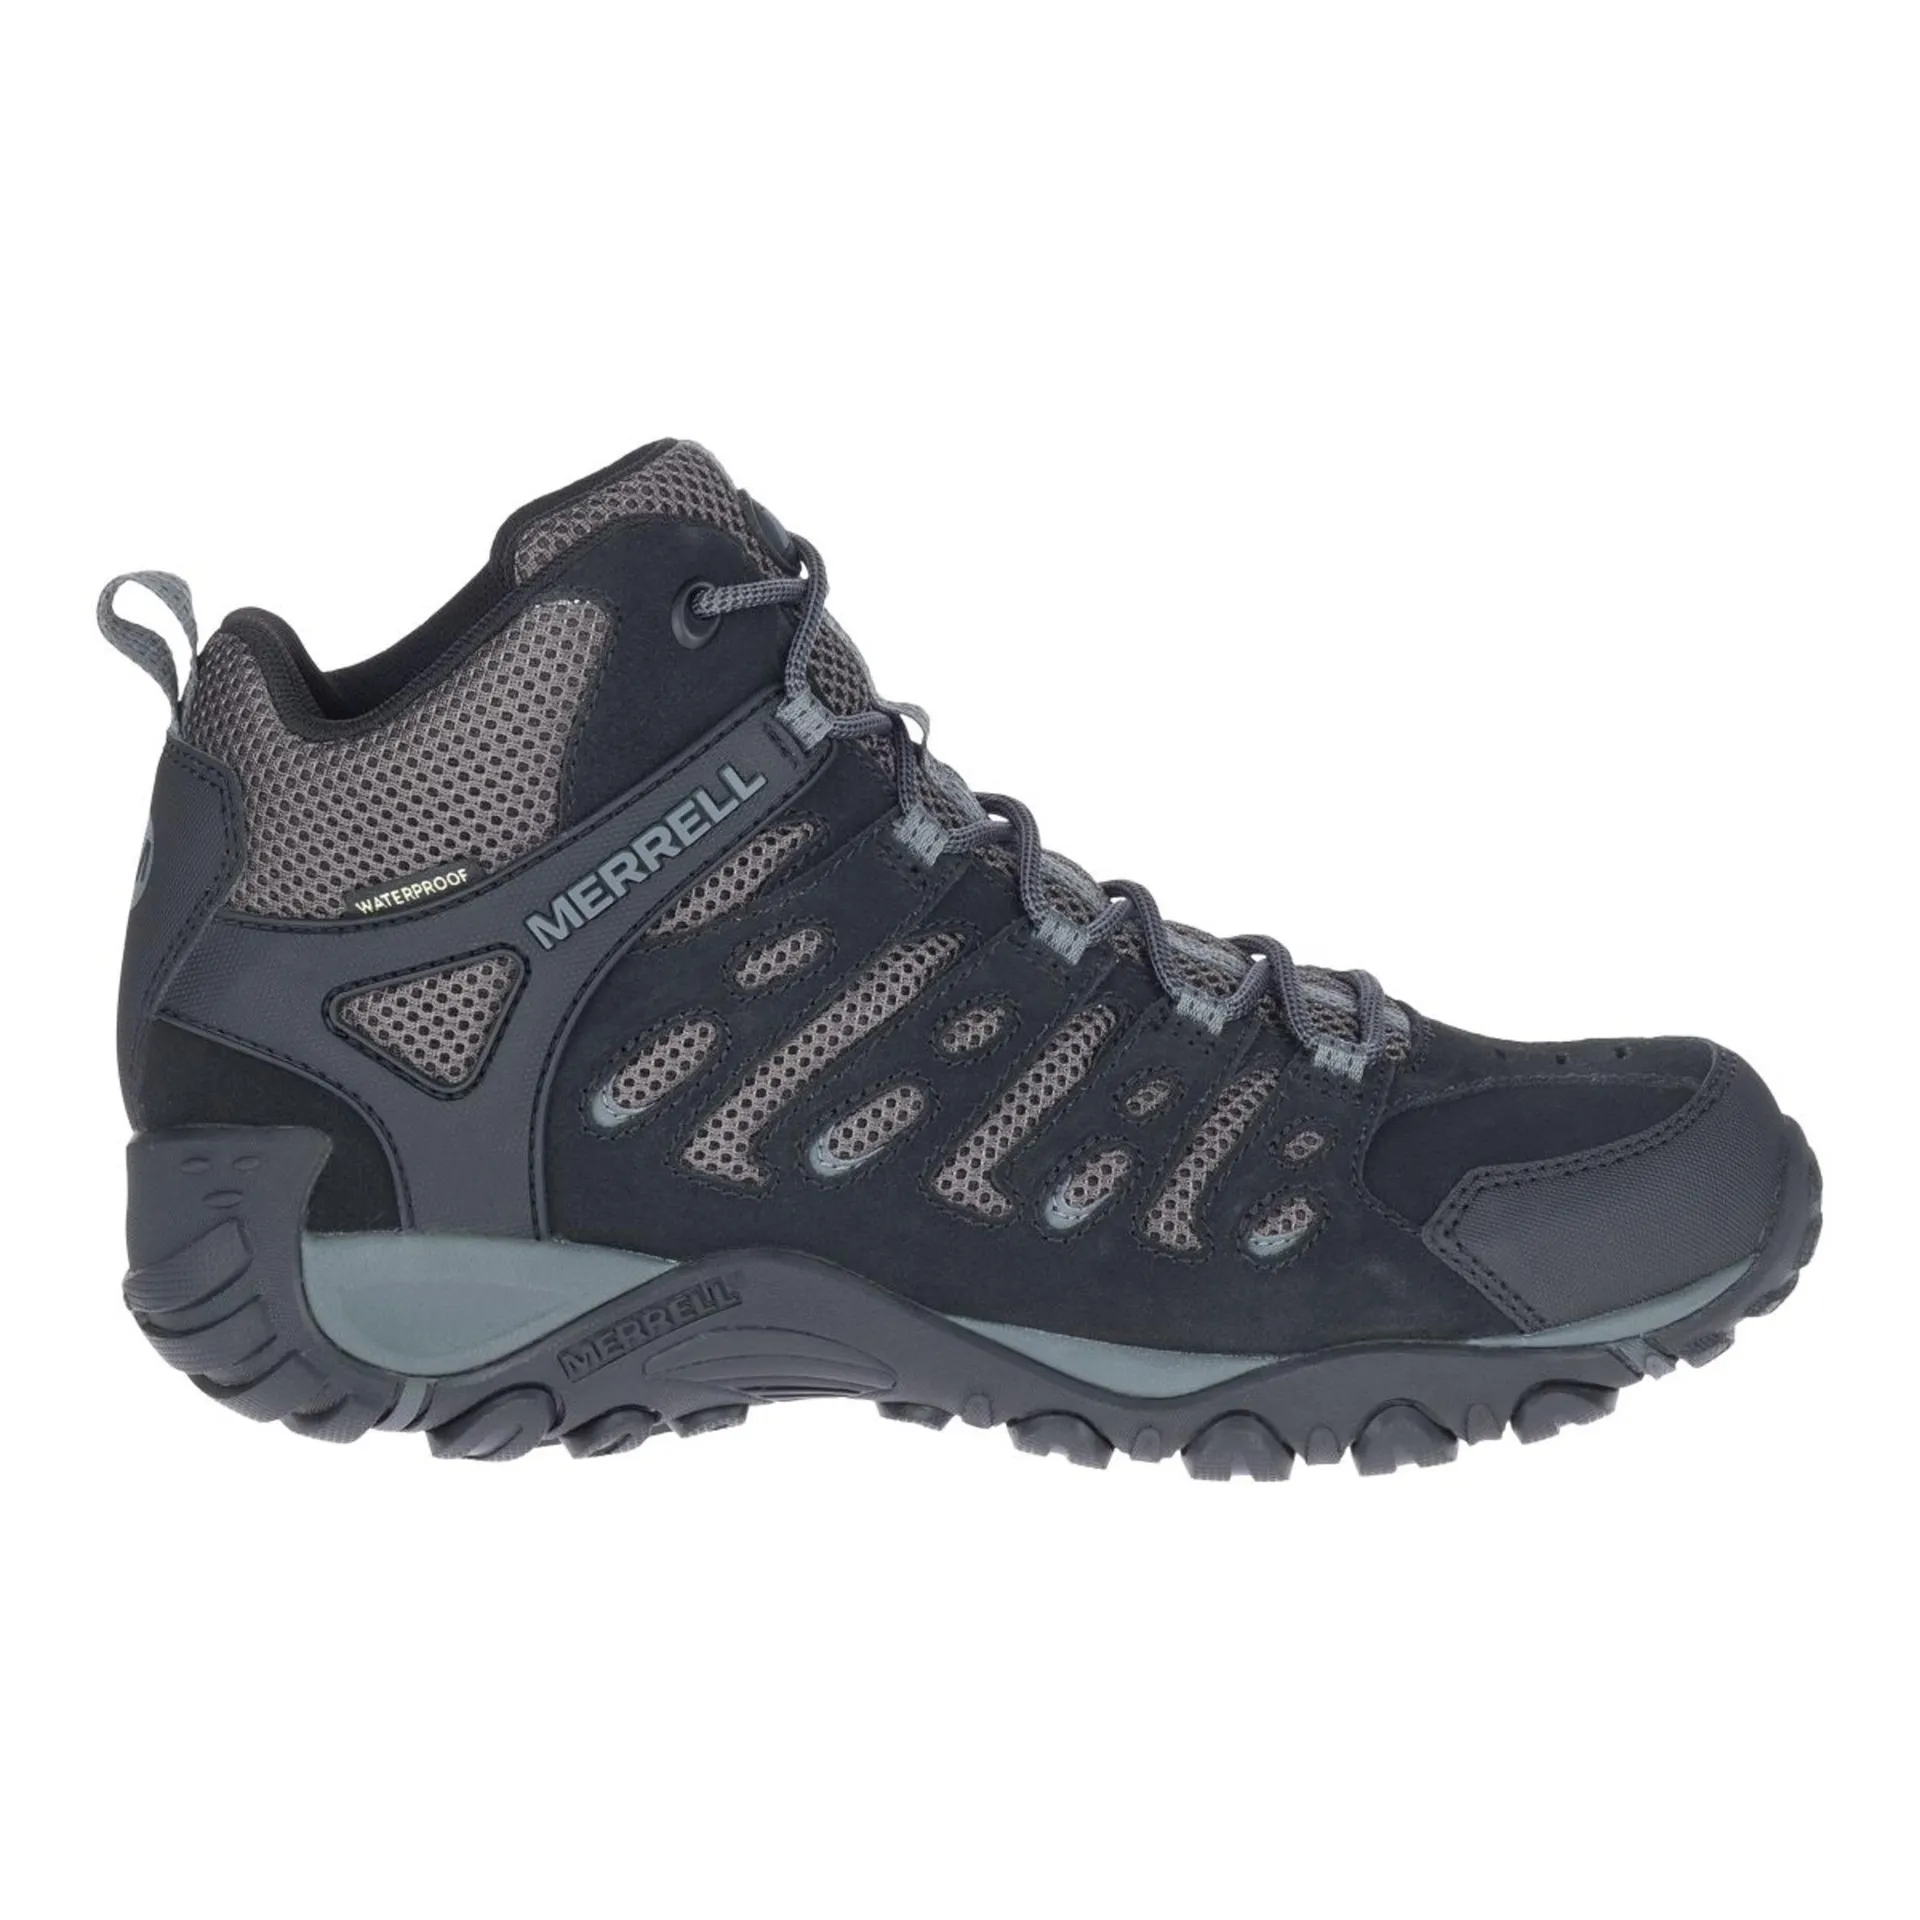 Merrell Men's Crosslander 2 Waterproof Suede Hiking Boots